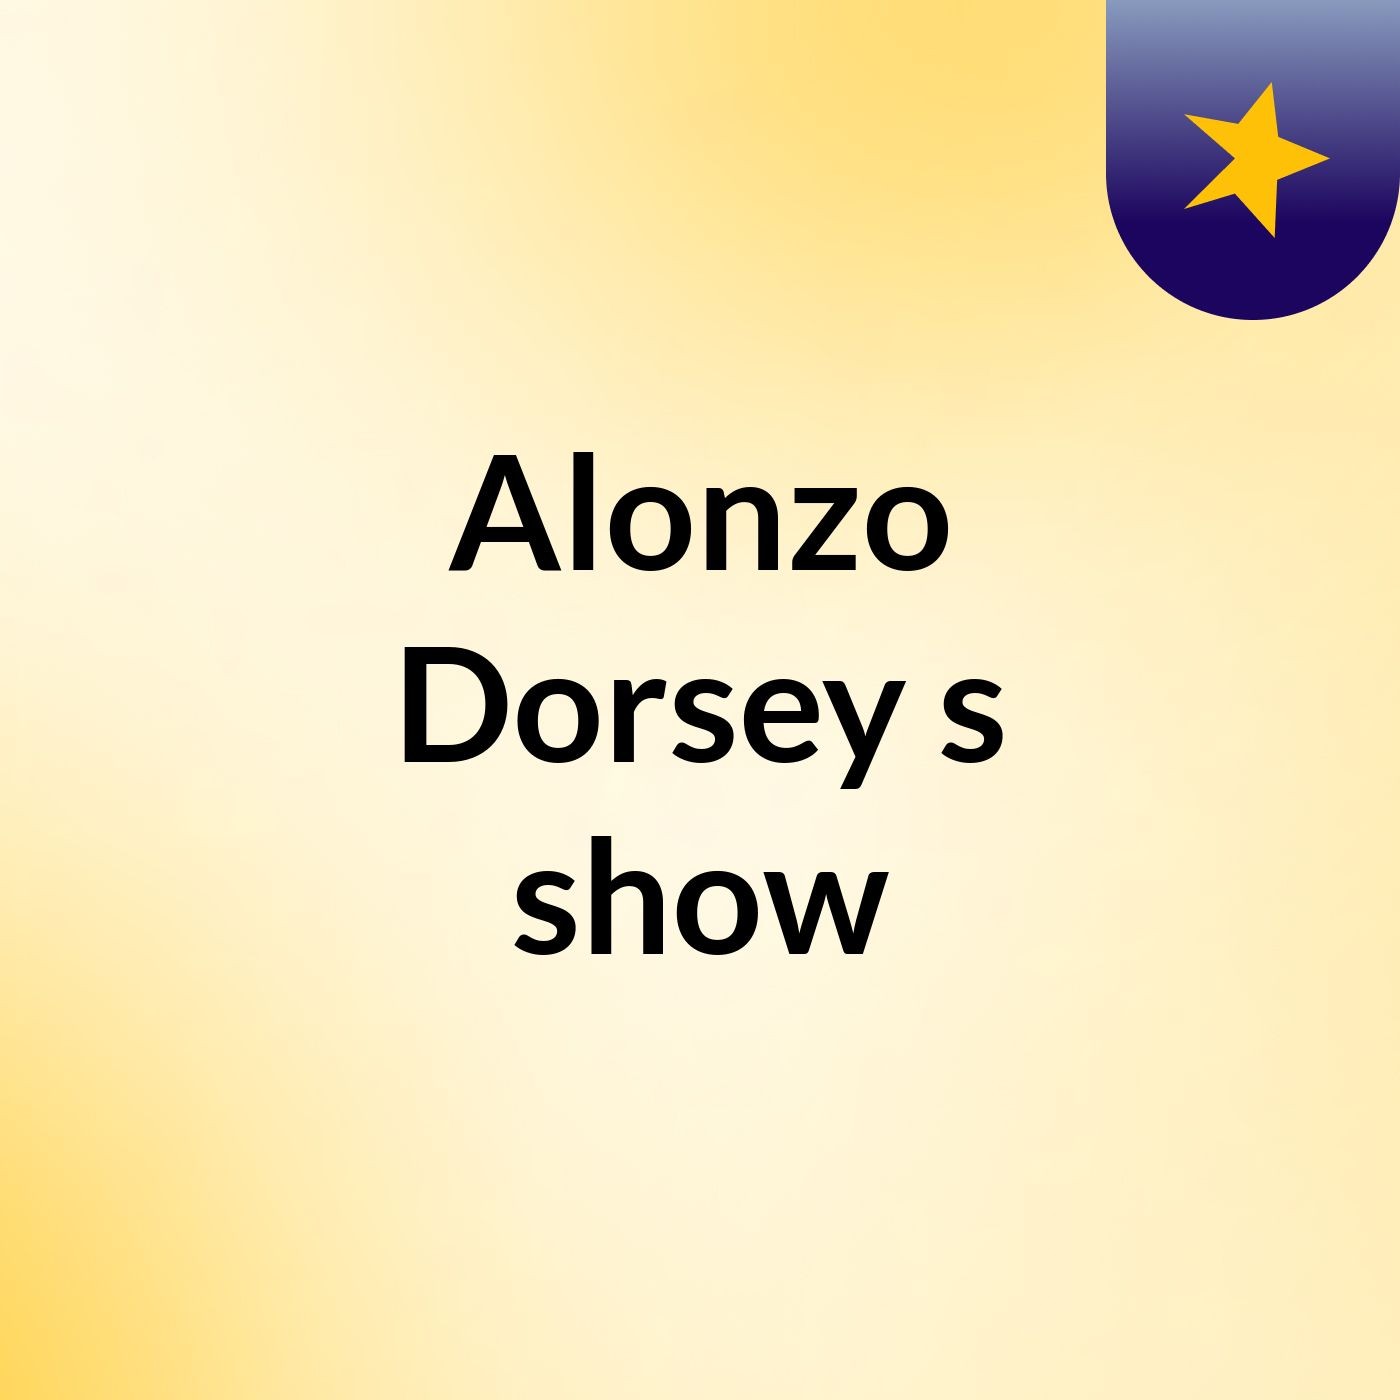 Alonzo Dorsey's show